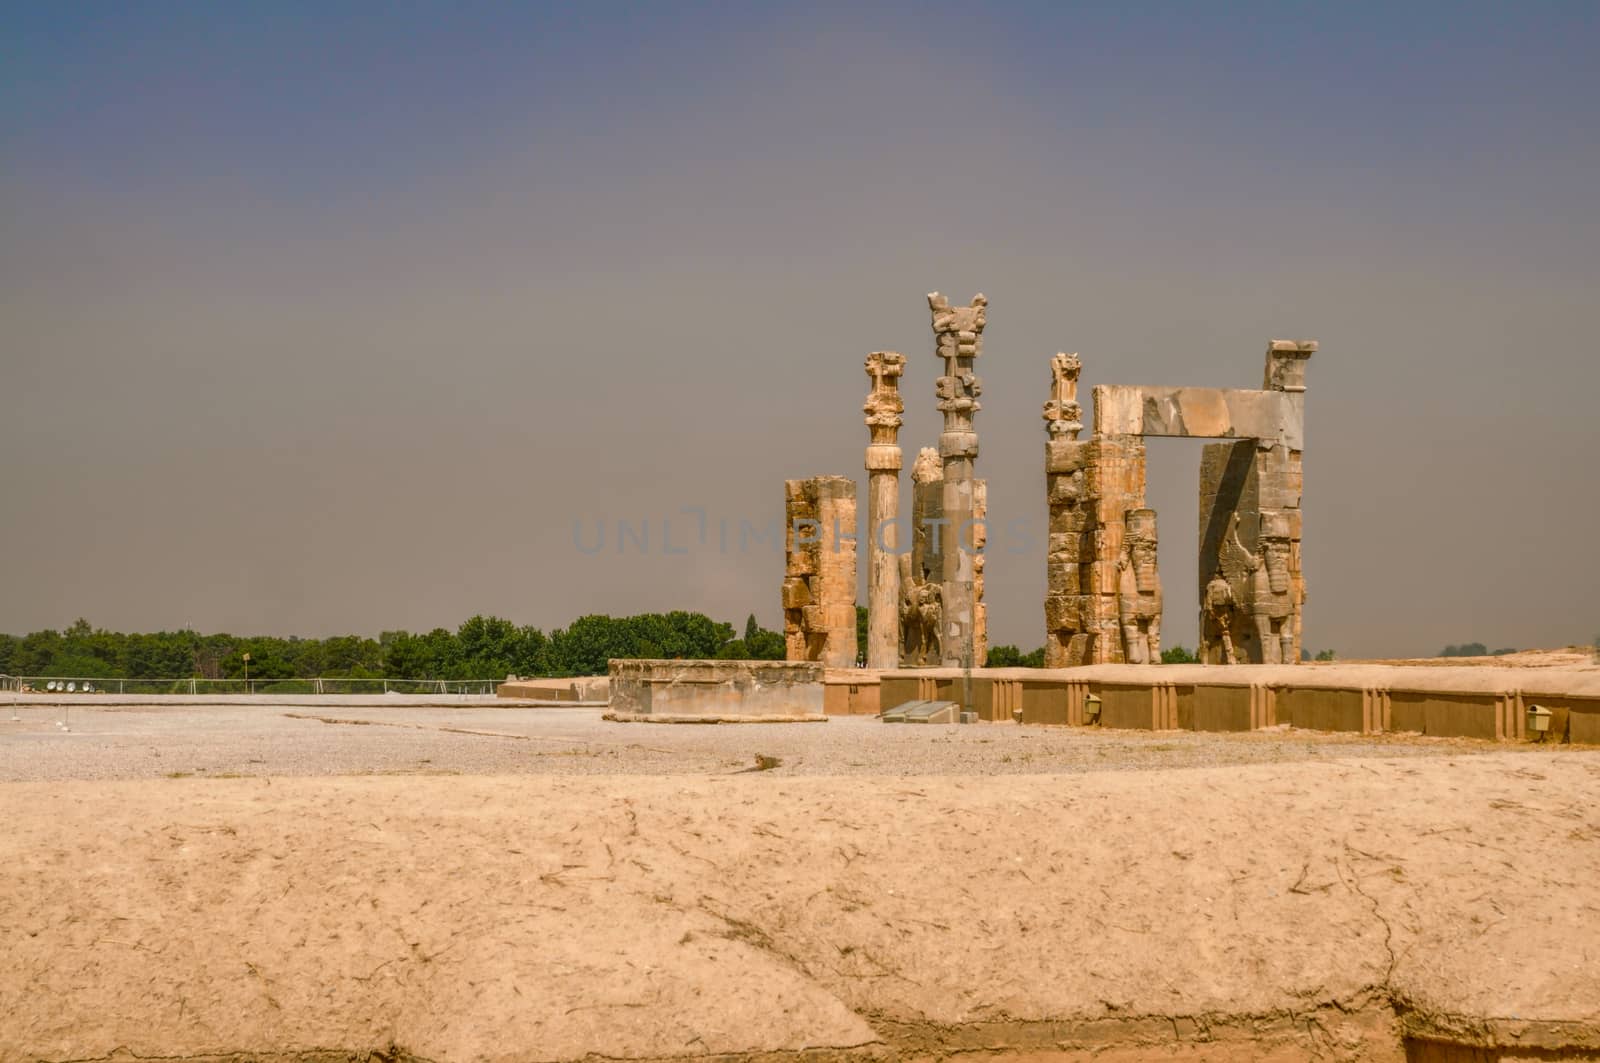 Ruins of persian capital Persepolis in current Iran